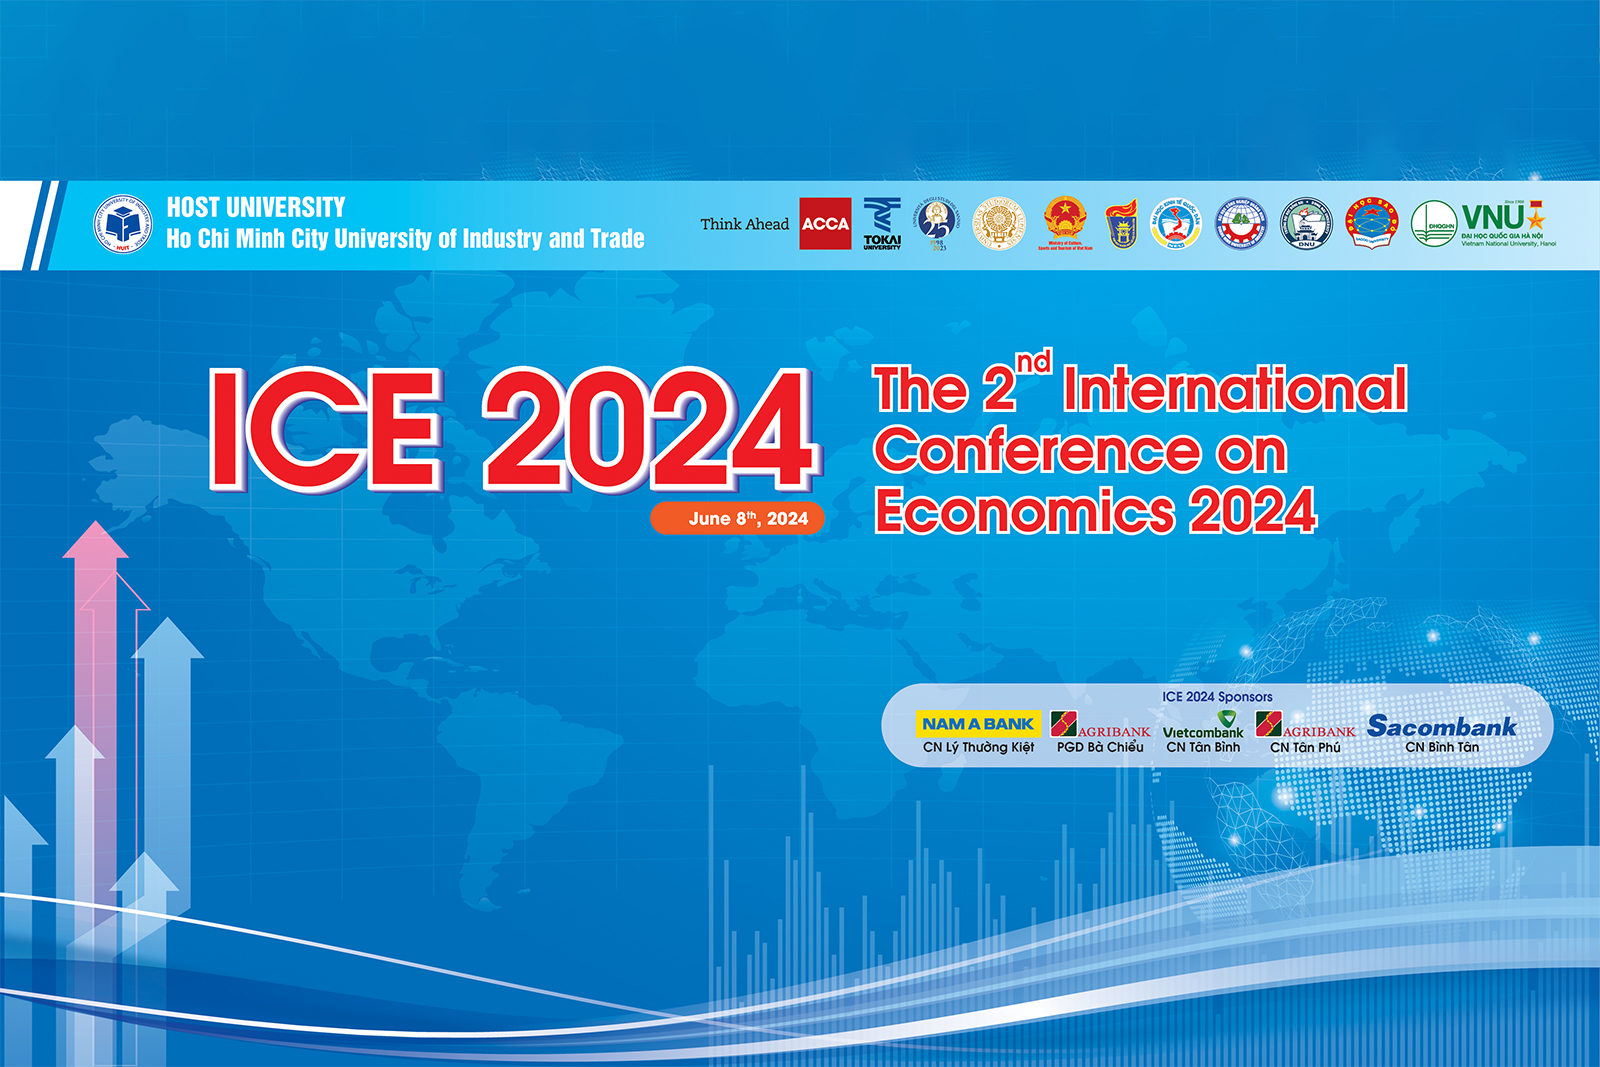 Tổ chức Hội thảo Quốc tế về Kinh tế lần 2 (2nd International Conference on Economics) - ICE 2024